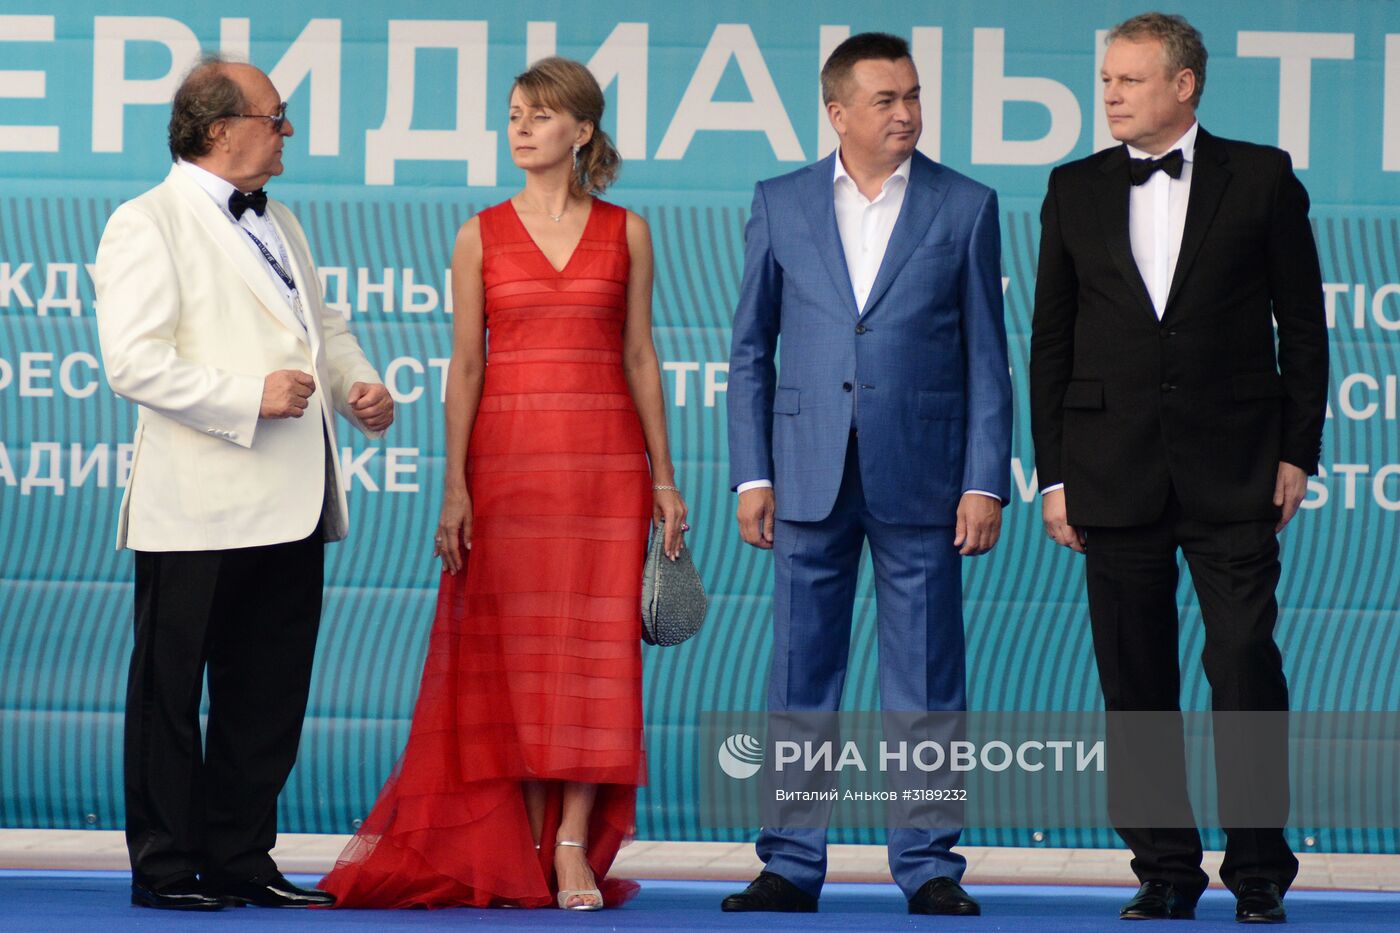 Открытие кинофестиваля "Меридианы Тихого" во Владивостоке